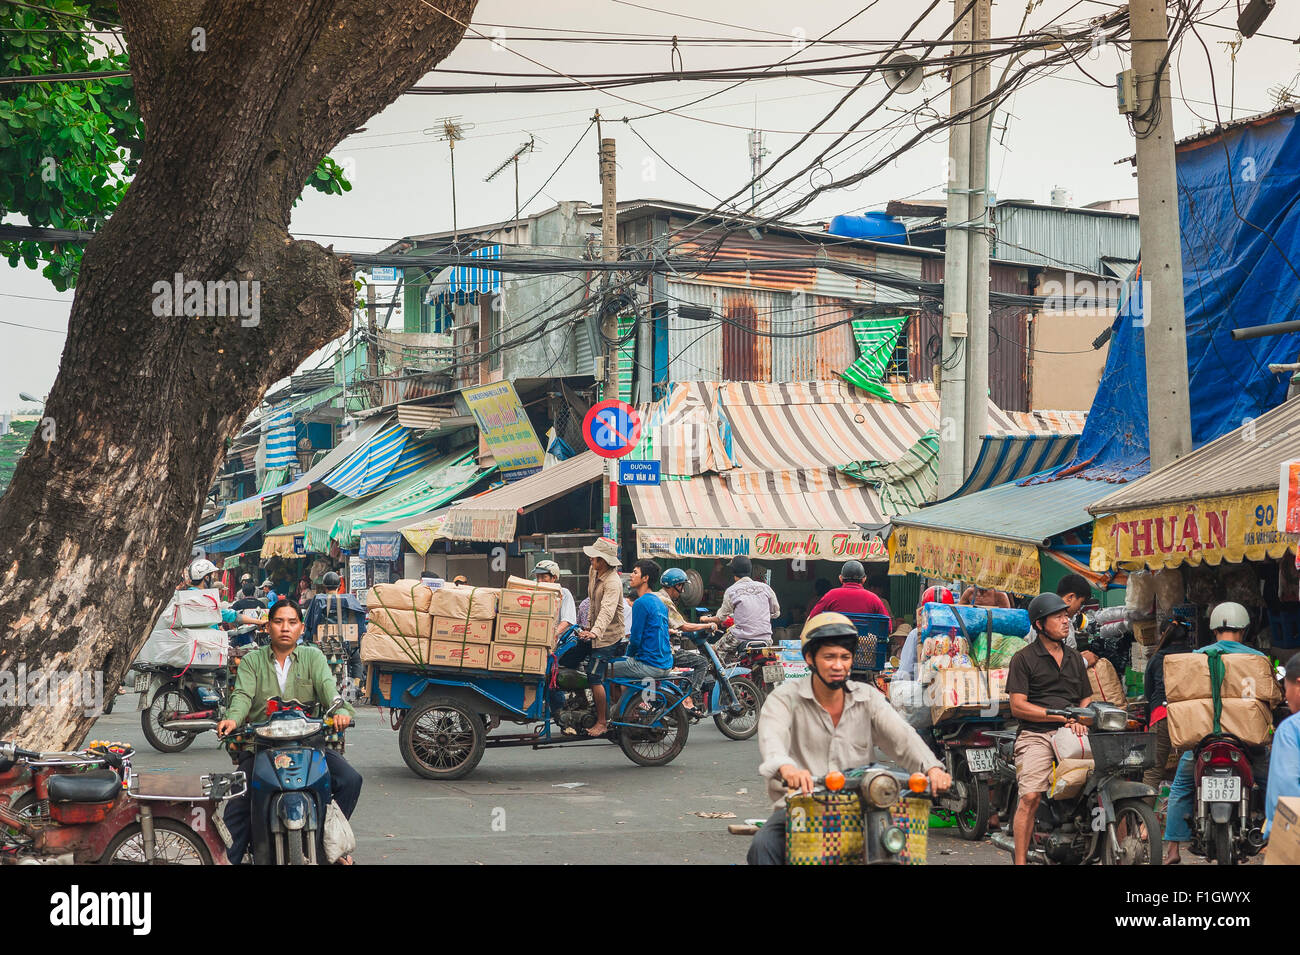 Vietnam Street Market, einer belebten Straße in der Innenstadt von cholon Bereich von Ho Chi Minh City, Saigon, Vietnam. Stockfoto